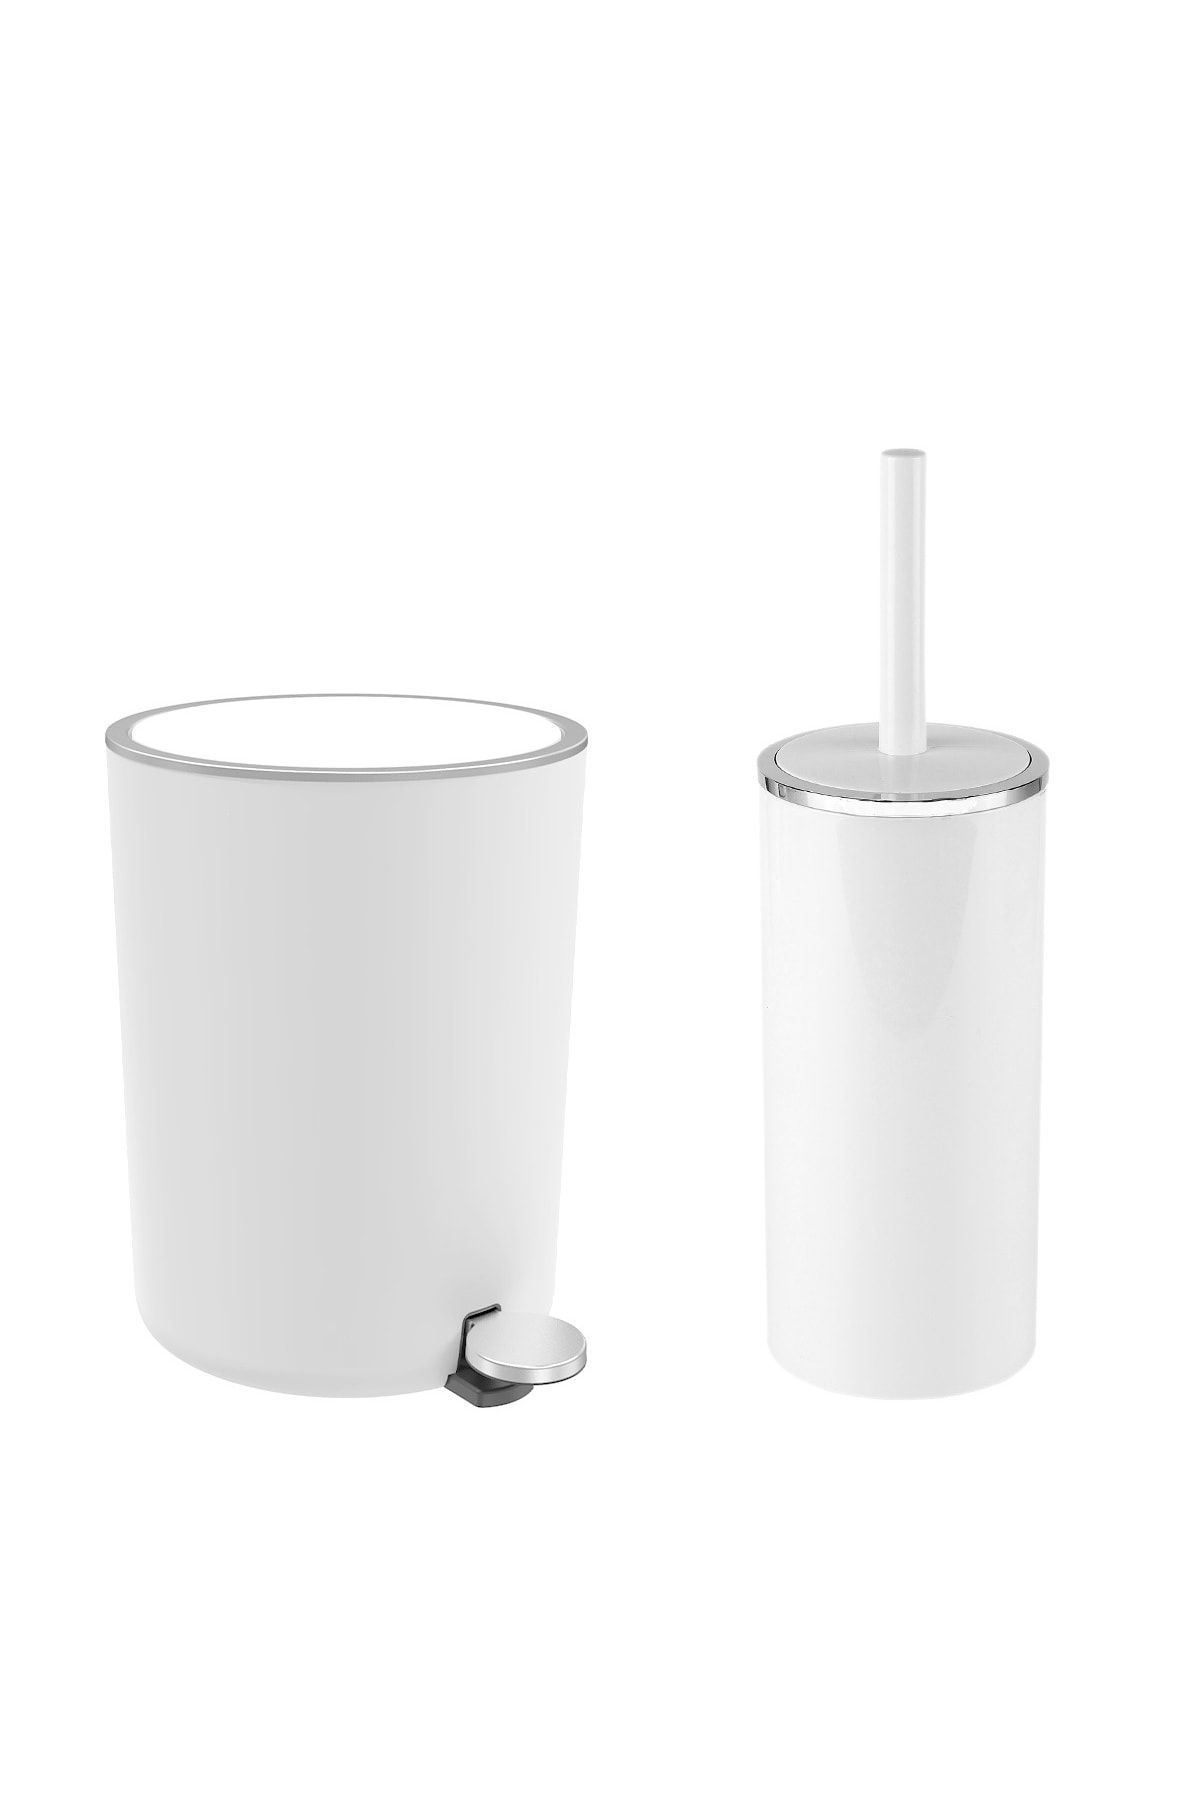 Prima Nova Lenox 5 Lt Pedallı Banyo Çöp Kovası Tuvalet Fırçası Set Set Beyaz 2'li